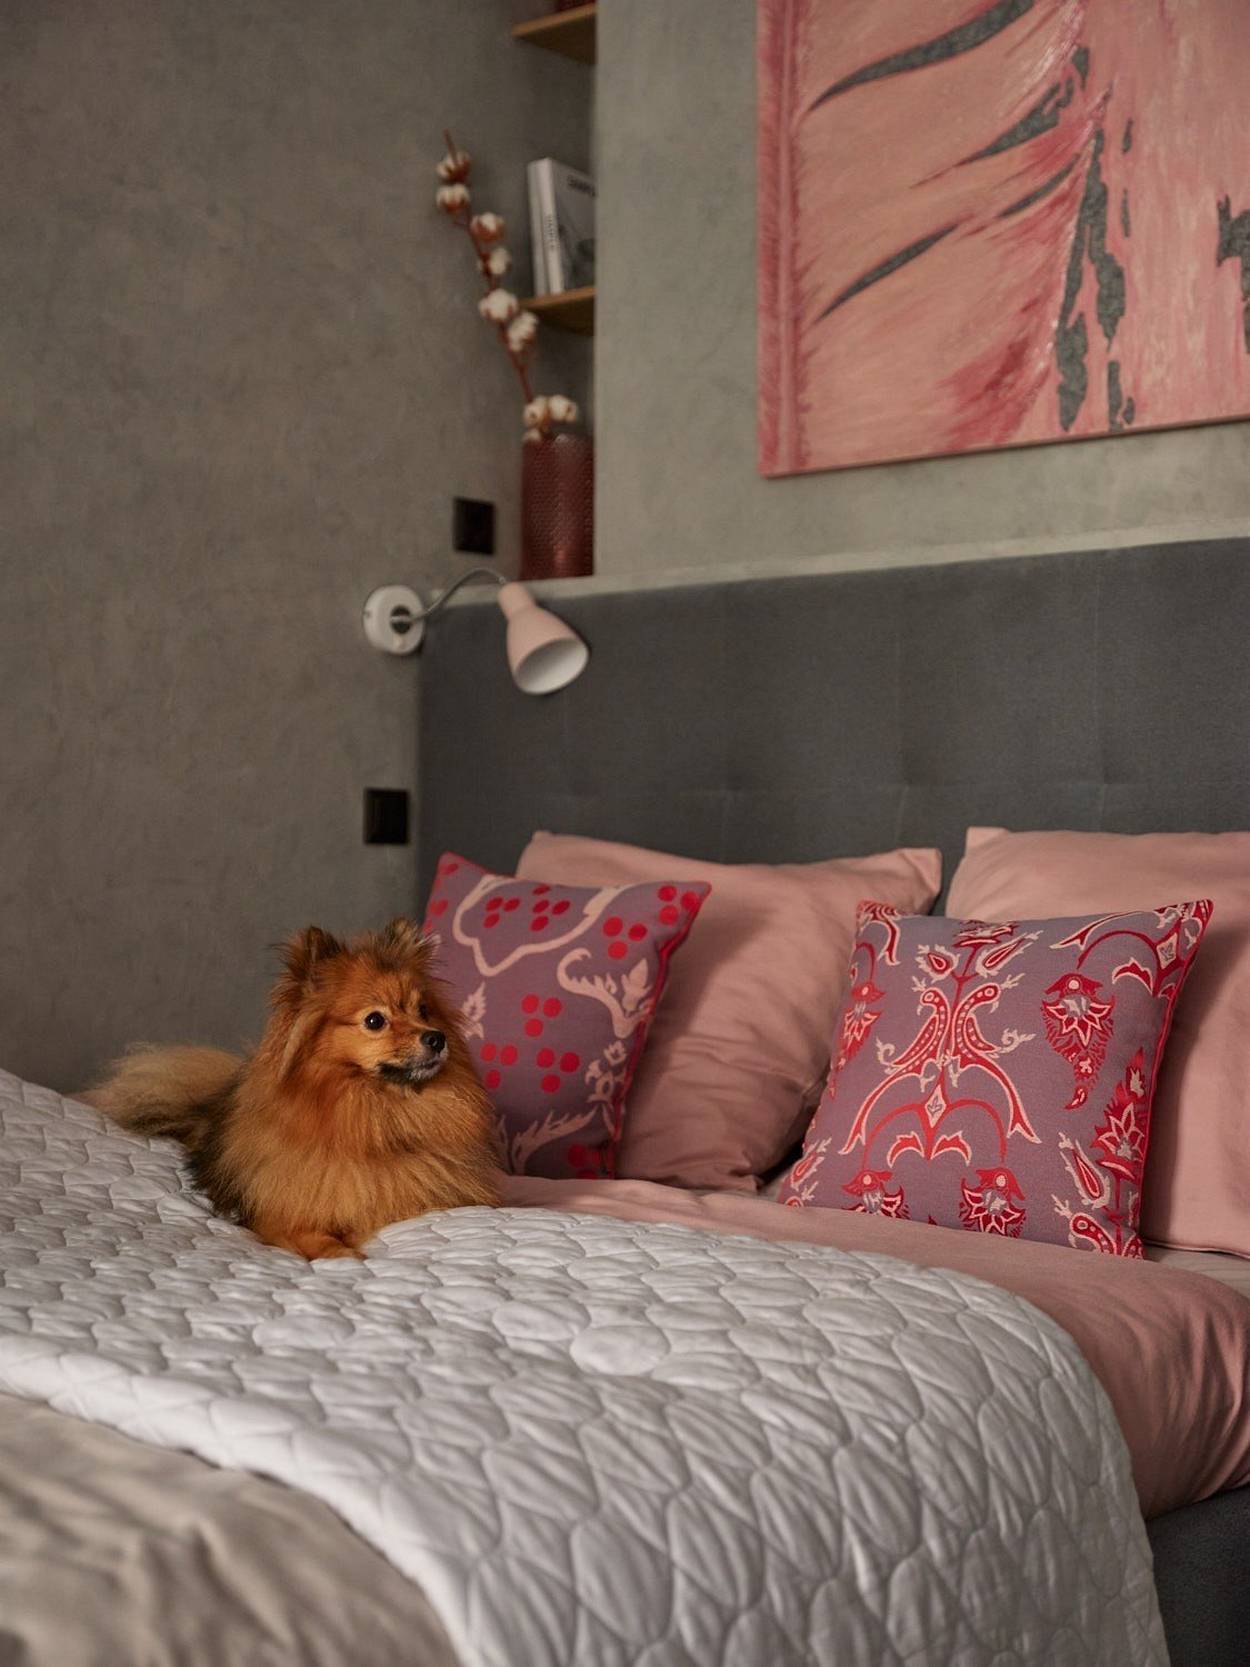 Căn phòng sử dụng màu xám và hồng làm chủ đạo, hòa quyện giữa vẻ thanh lịch của màu xám và điệu đà của sắc hồng. Khu vực đầu giường được thiết kế vững chắc.